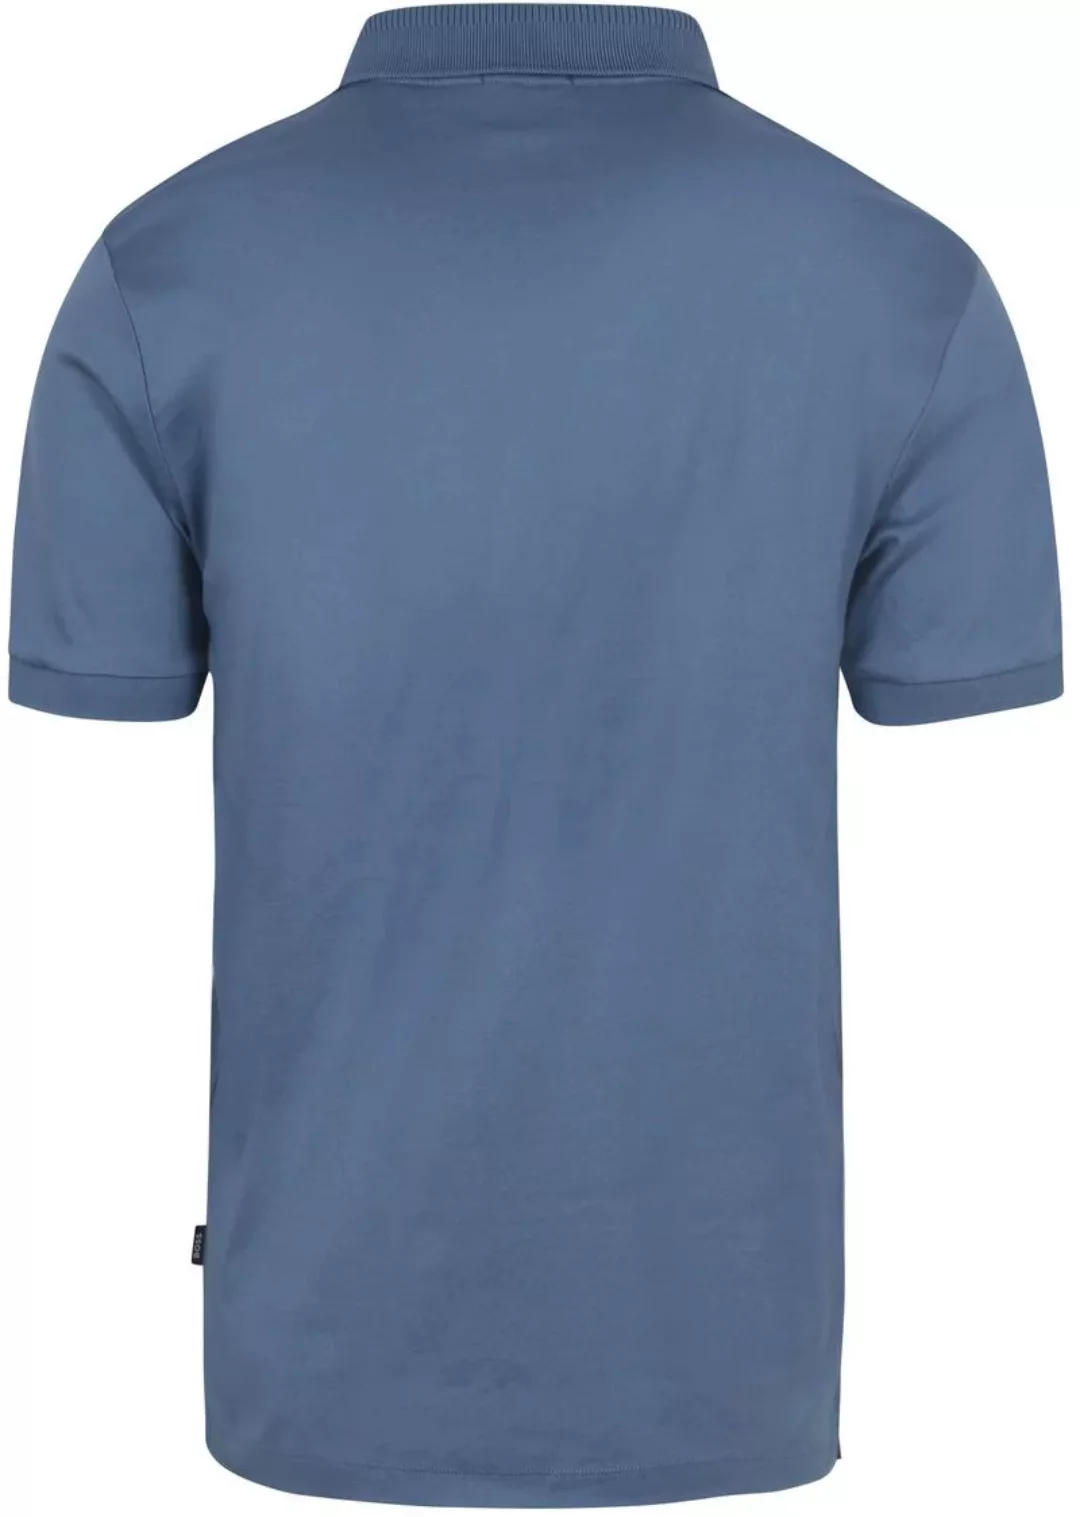 BOSS Poloshirt Polston Blau - Größe XL günstig online kaufen